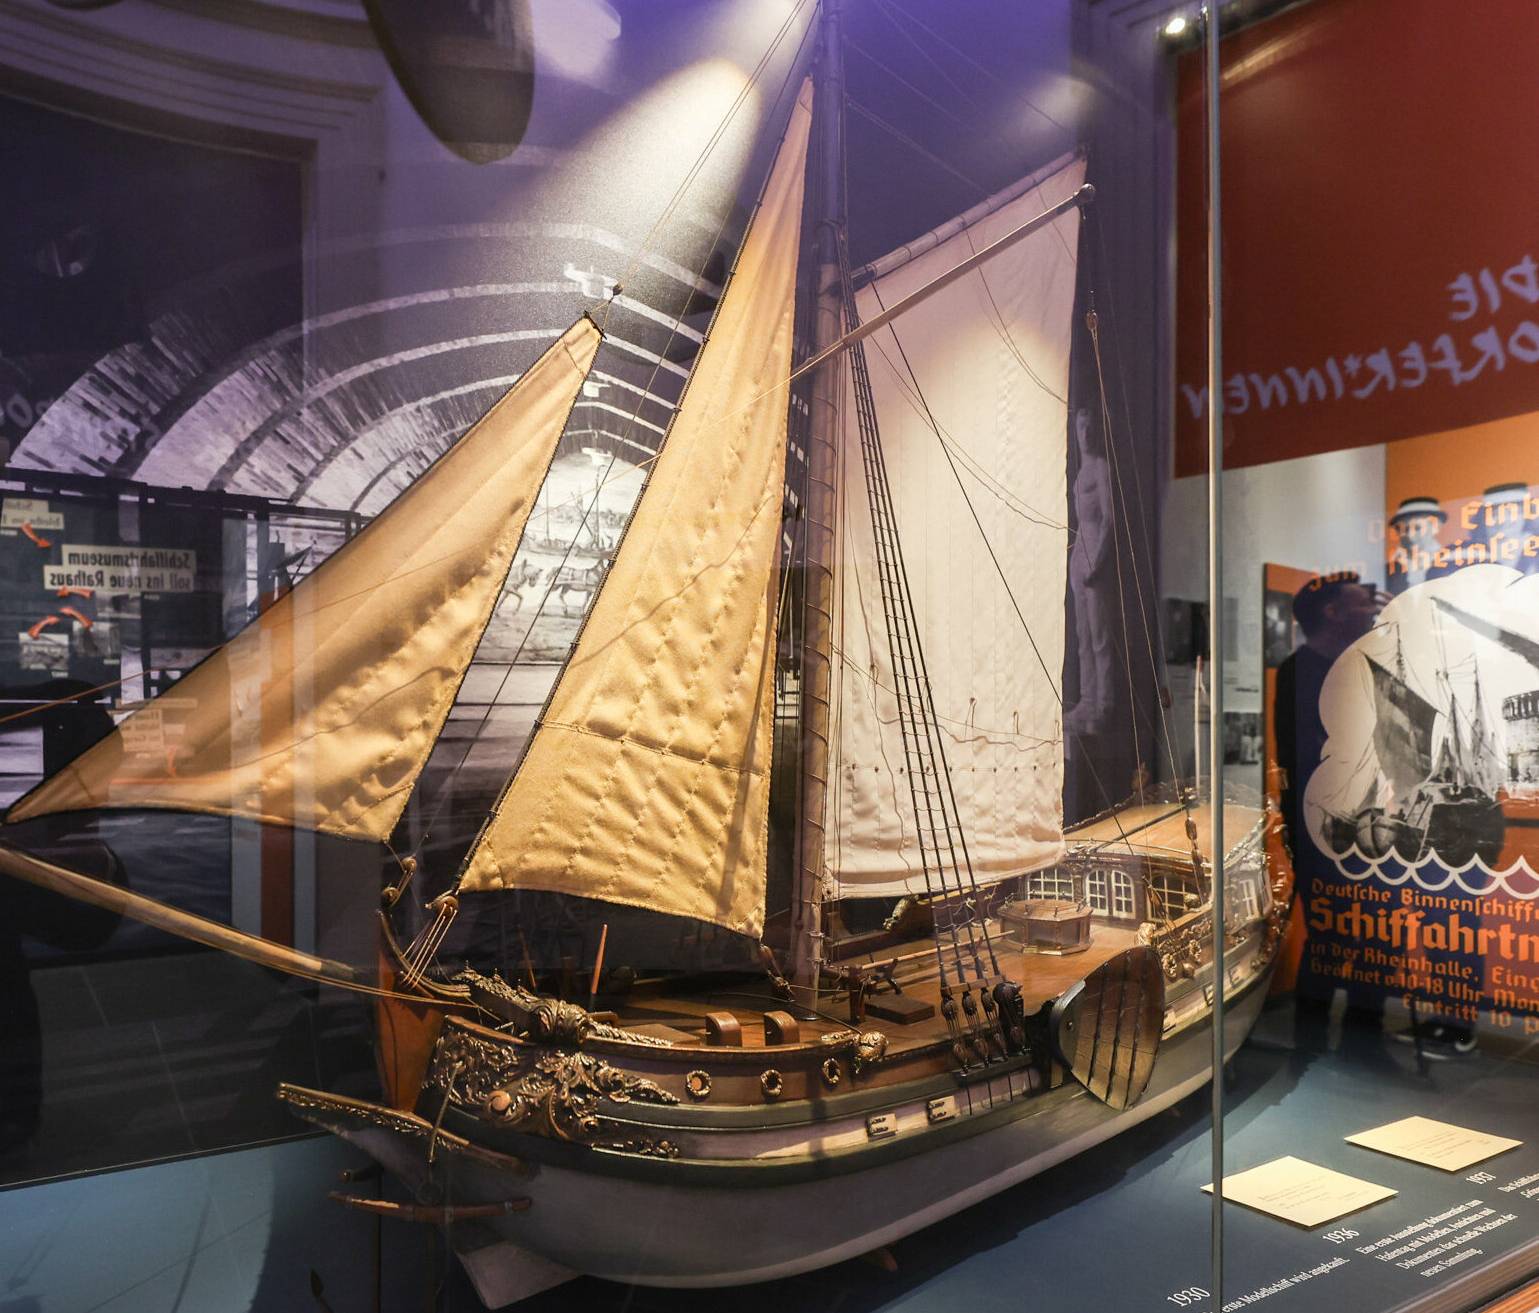 Ein Highlight der Sonderausstellung - Modell einer Staatenjacht des Kurfürsten Johann Wilhelm von Pfalz Neuburg, das 1936 Teil der ersten Ausstellung des SchifffahrtMuseums war.